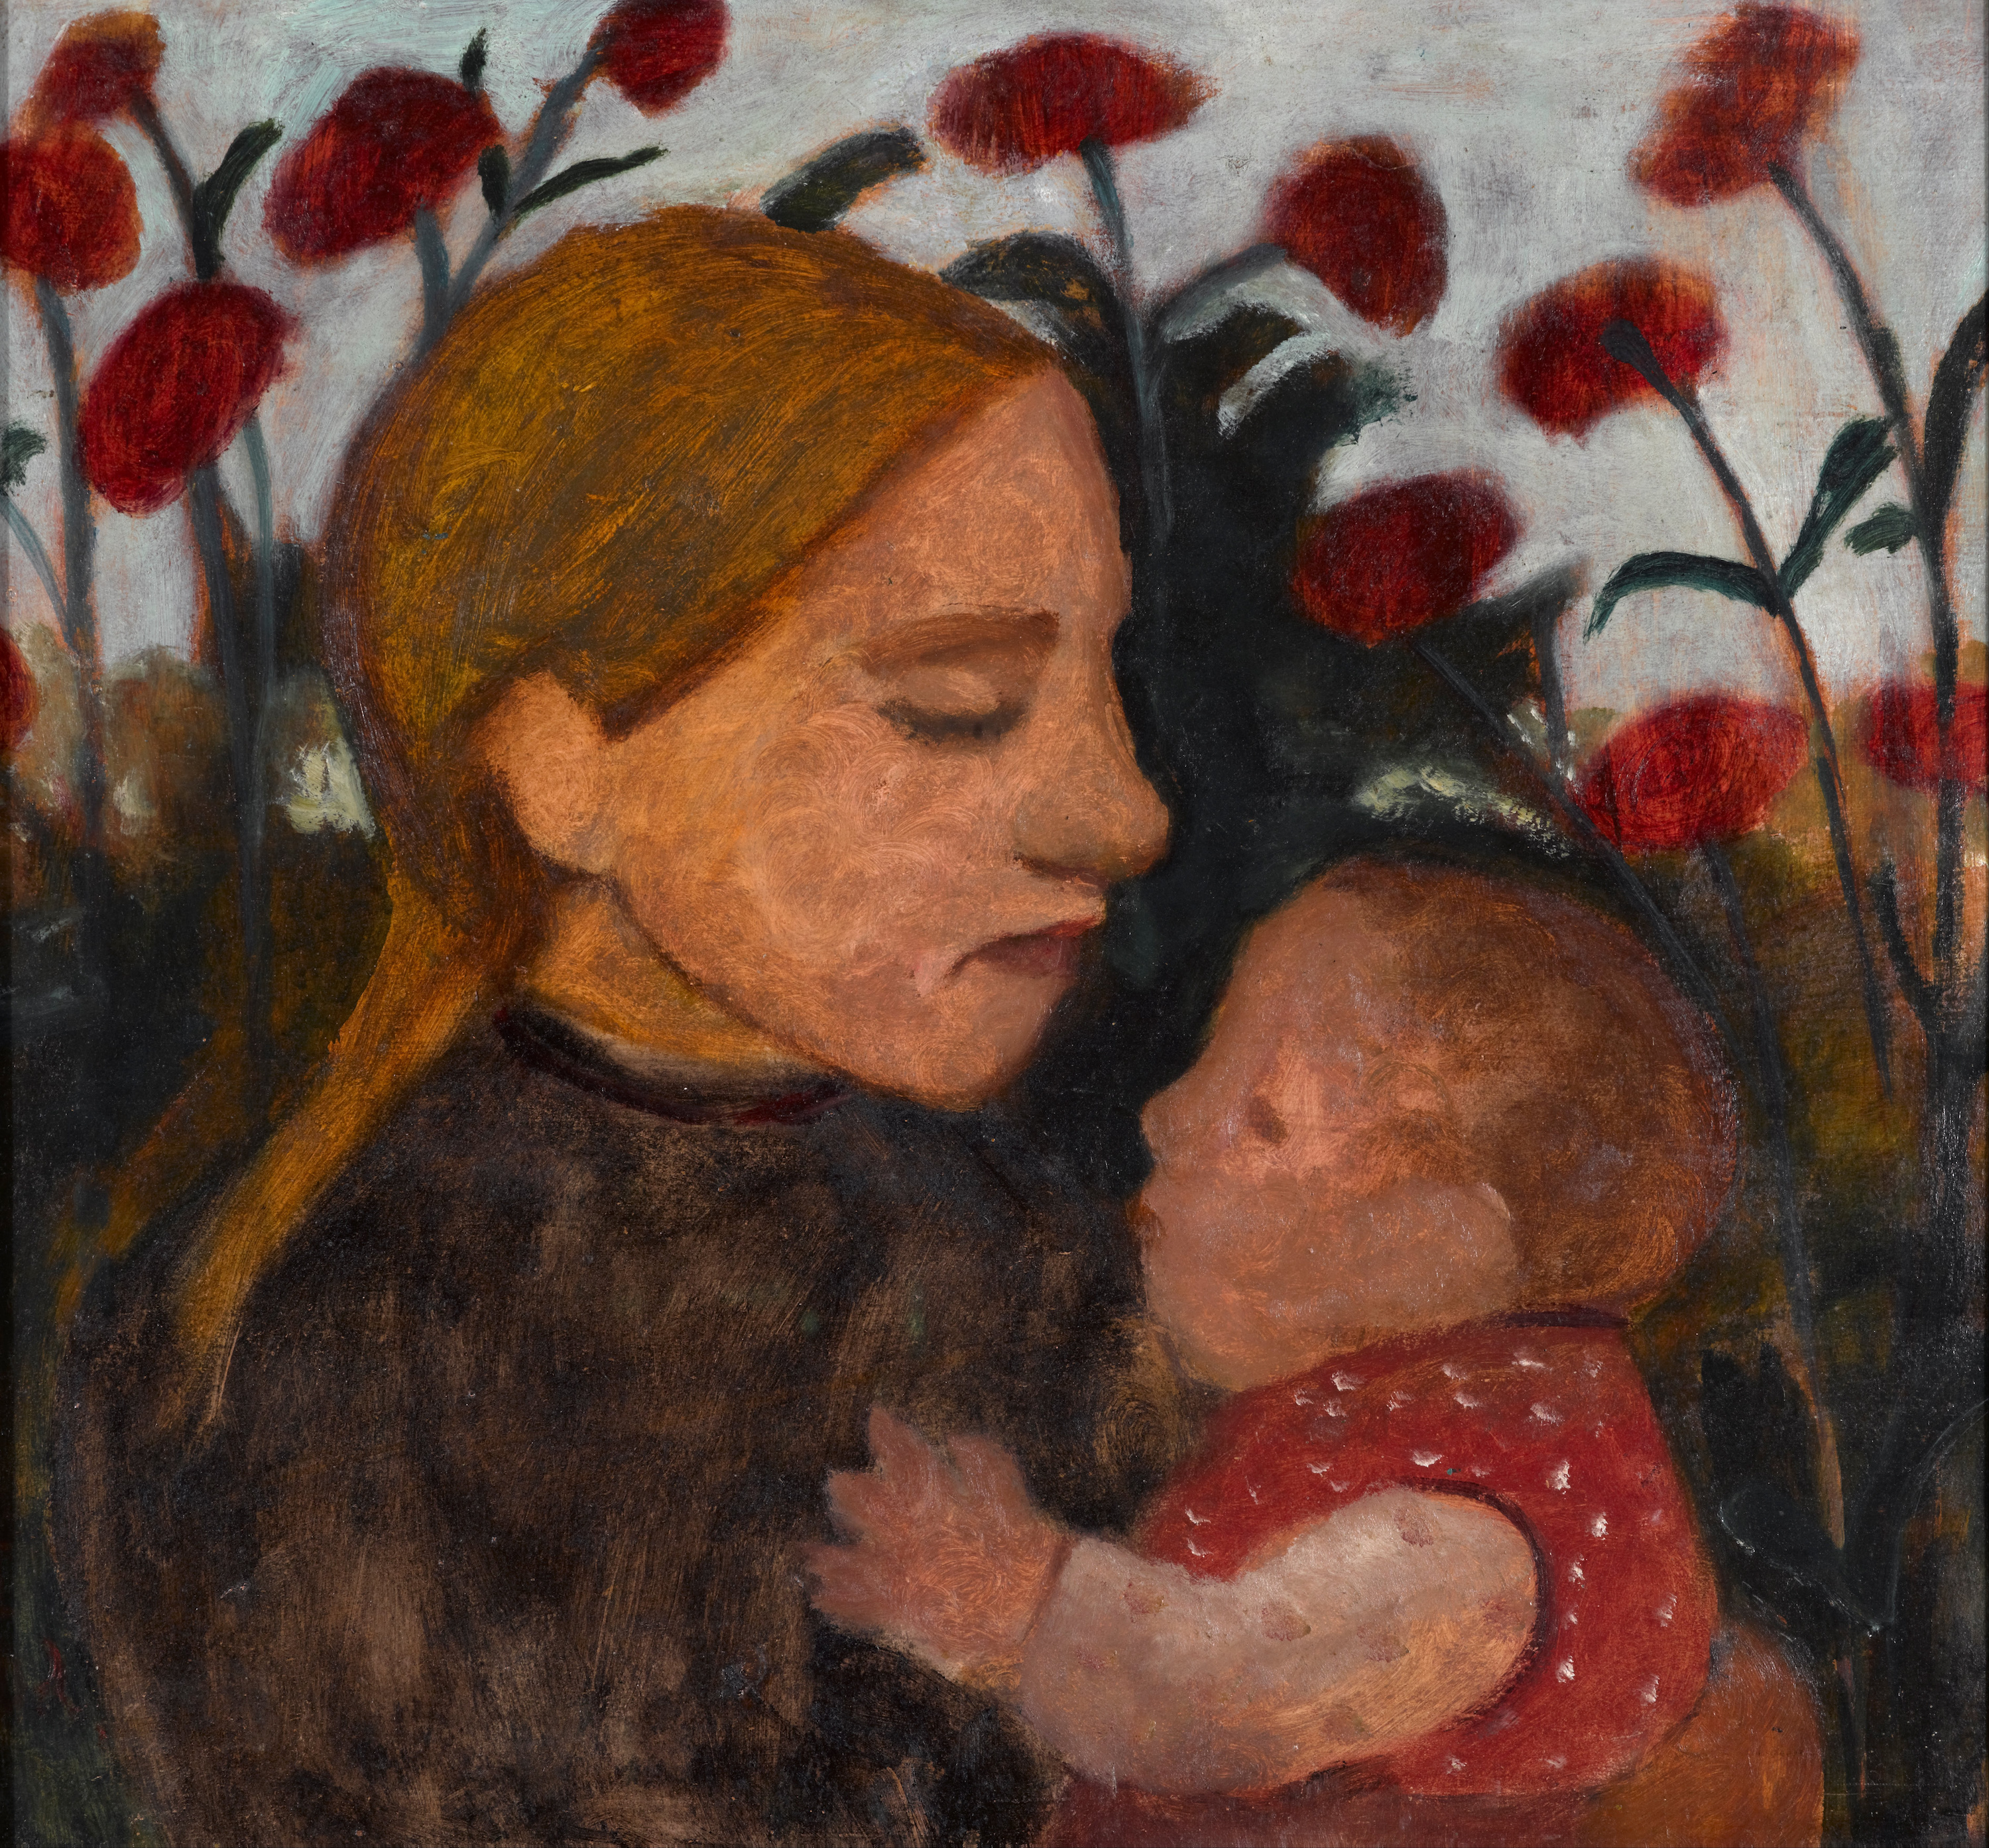 Petite fille avec un enfant by Paula Modersohn-Becker - 1902 Musée d'art de La Haye